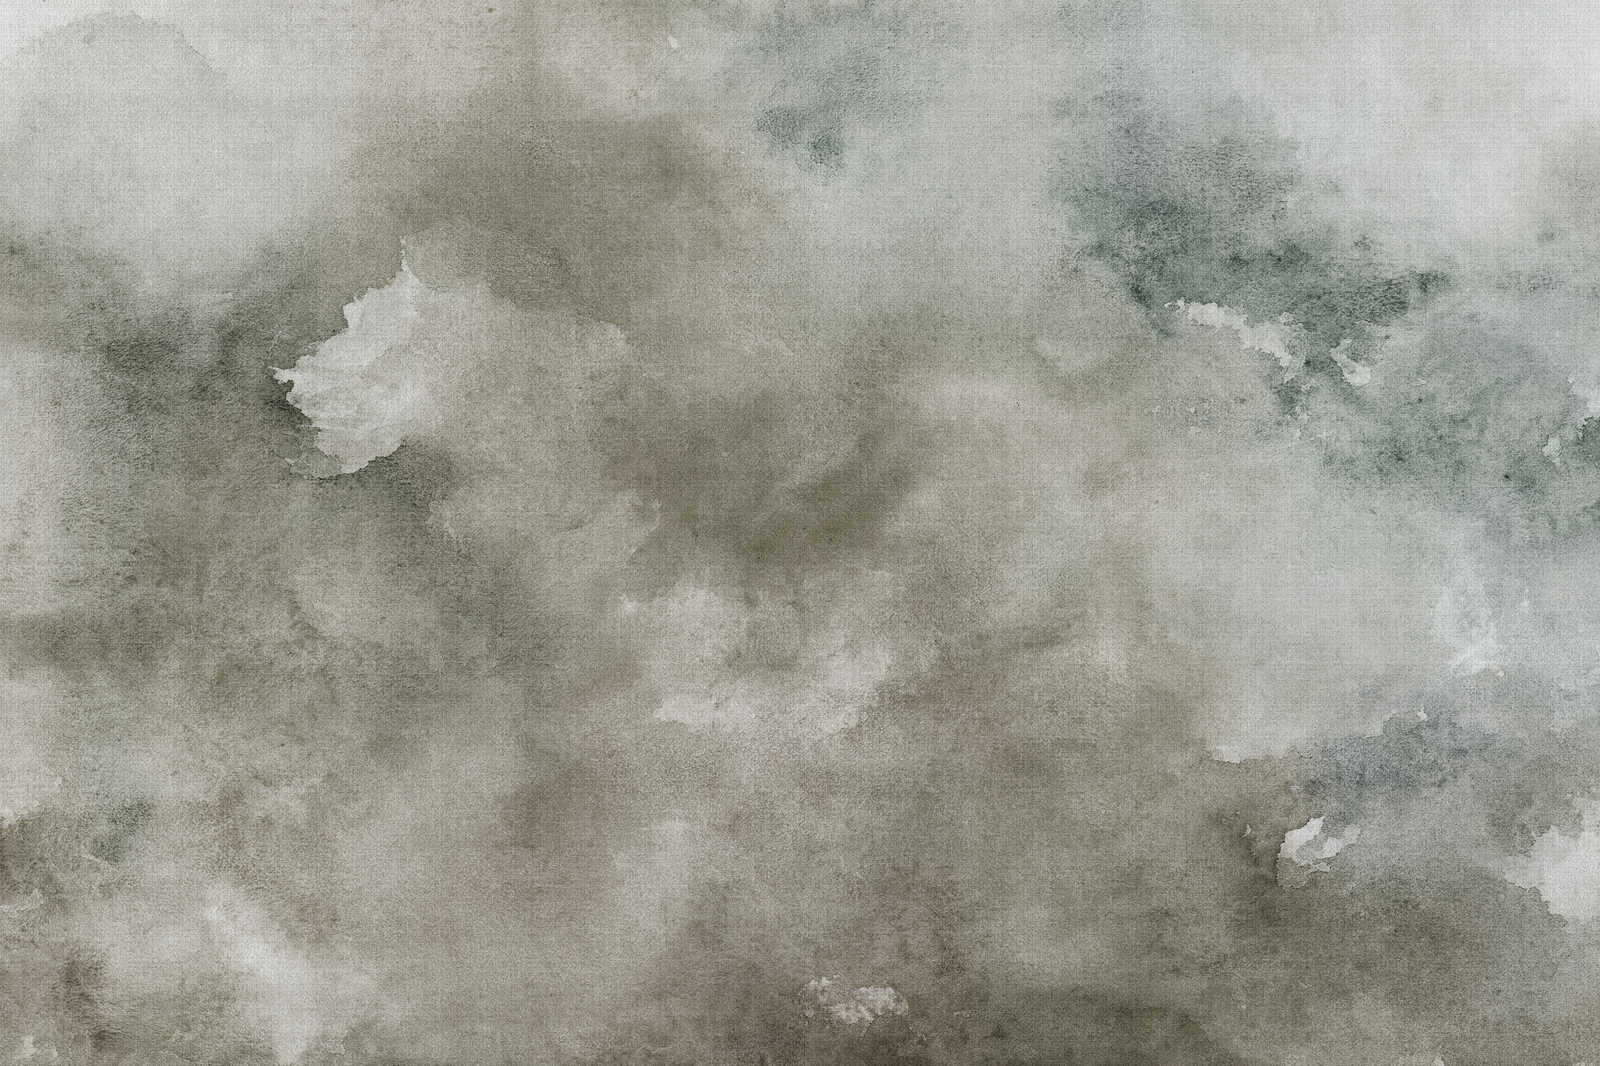             Acquerelli 1 - Quadro su tela ad acquerello grigio in lino naturale - 0,90 m x 0,60 m
        